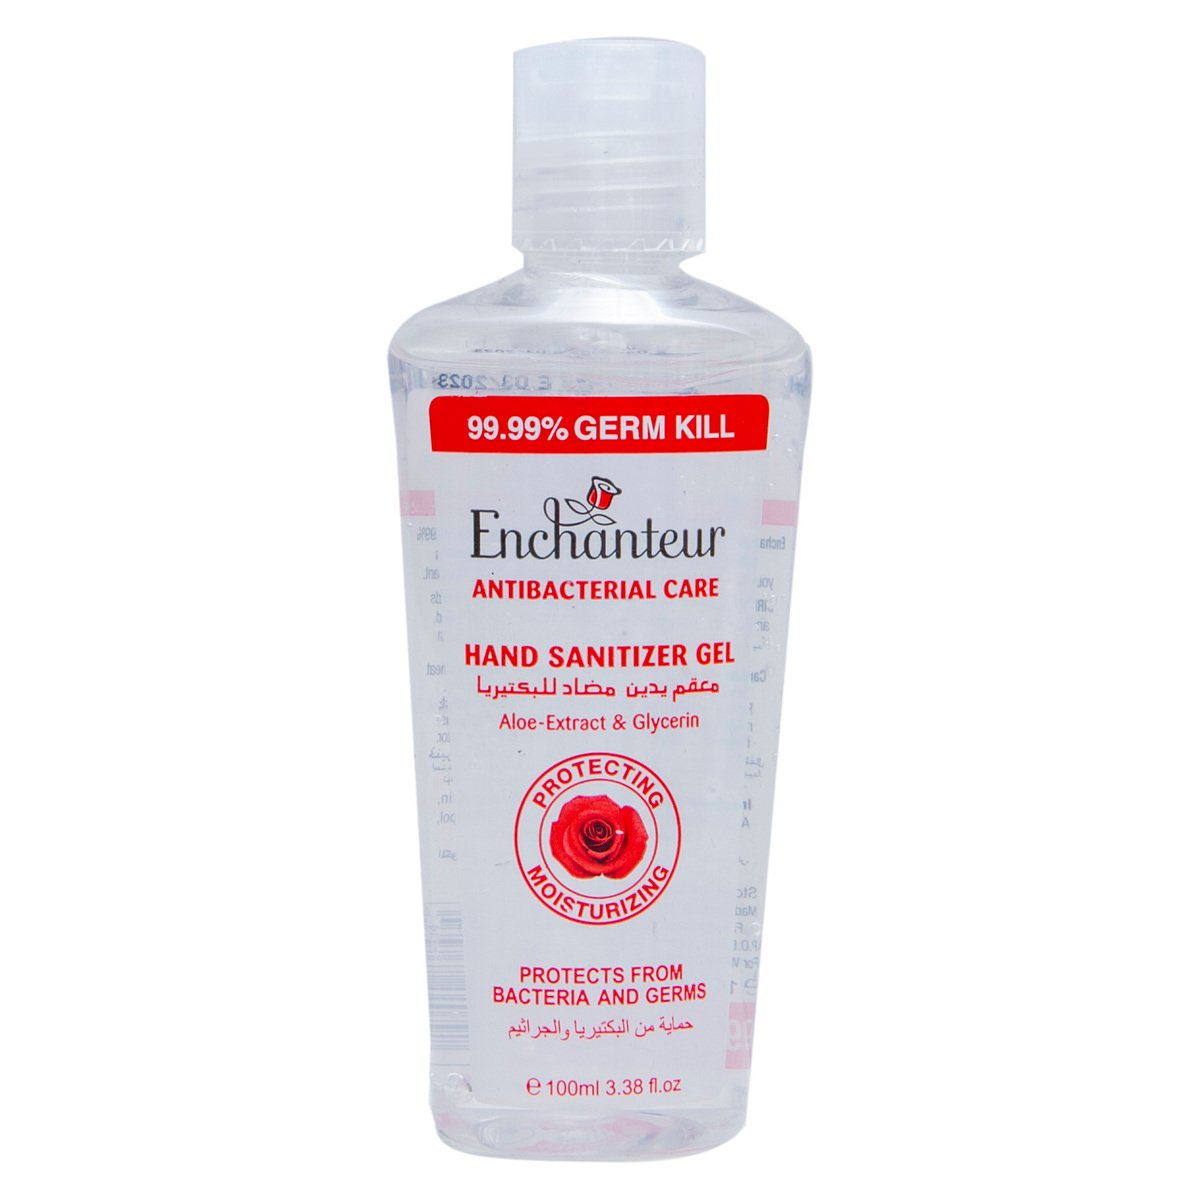 Enchanteur Antibacterial Care Hand Sanitizer Gel 100 ml